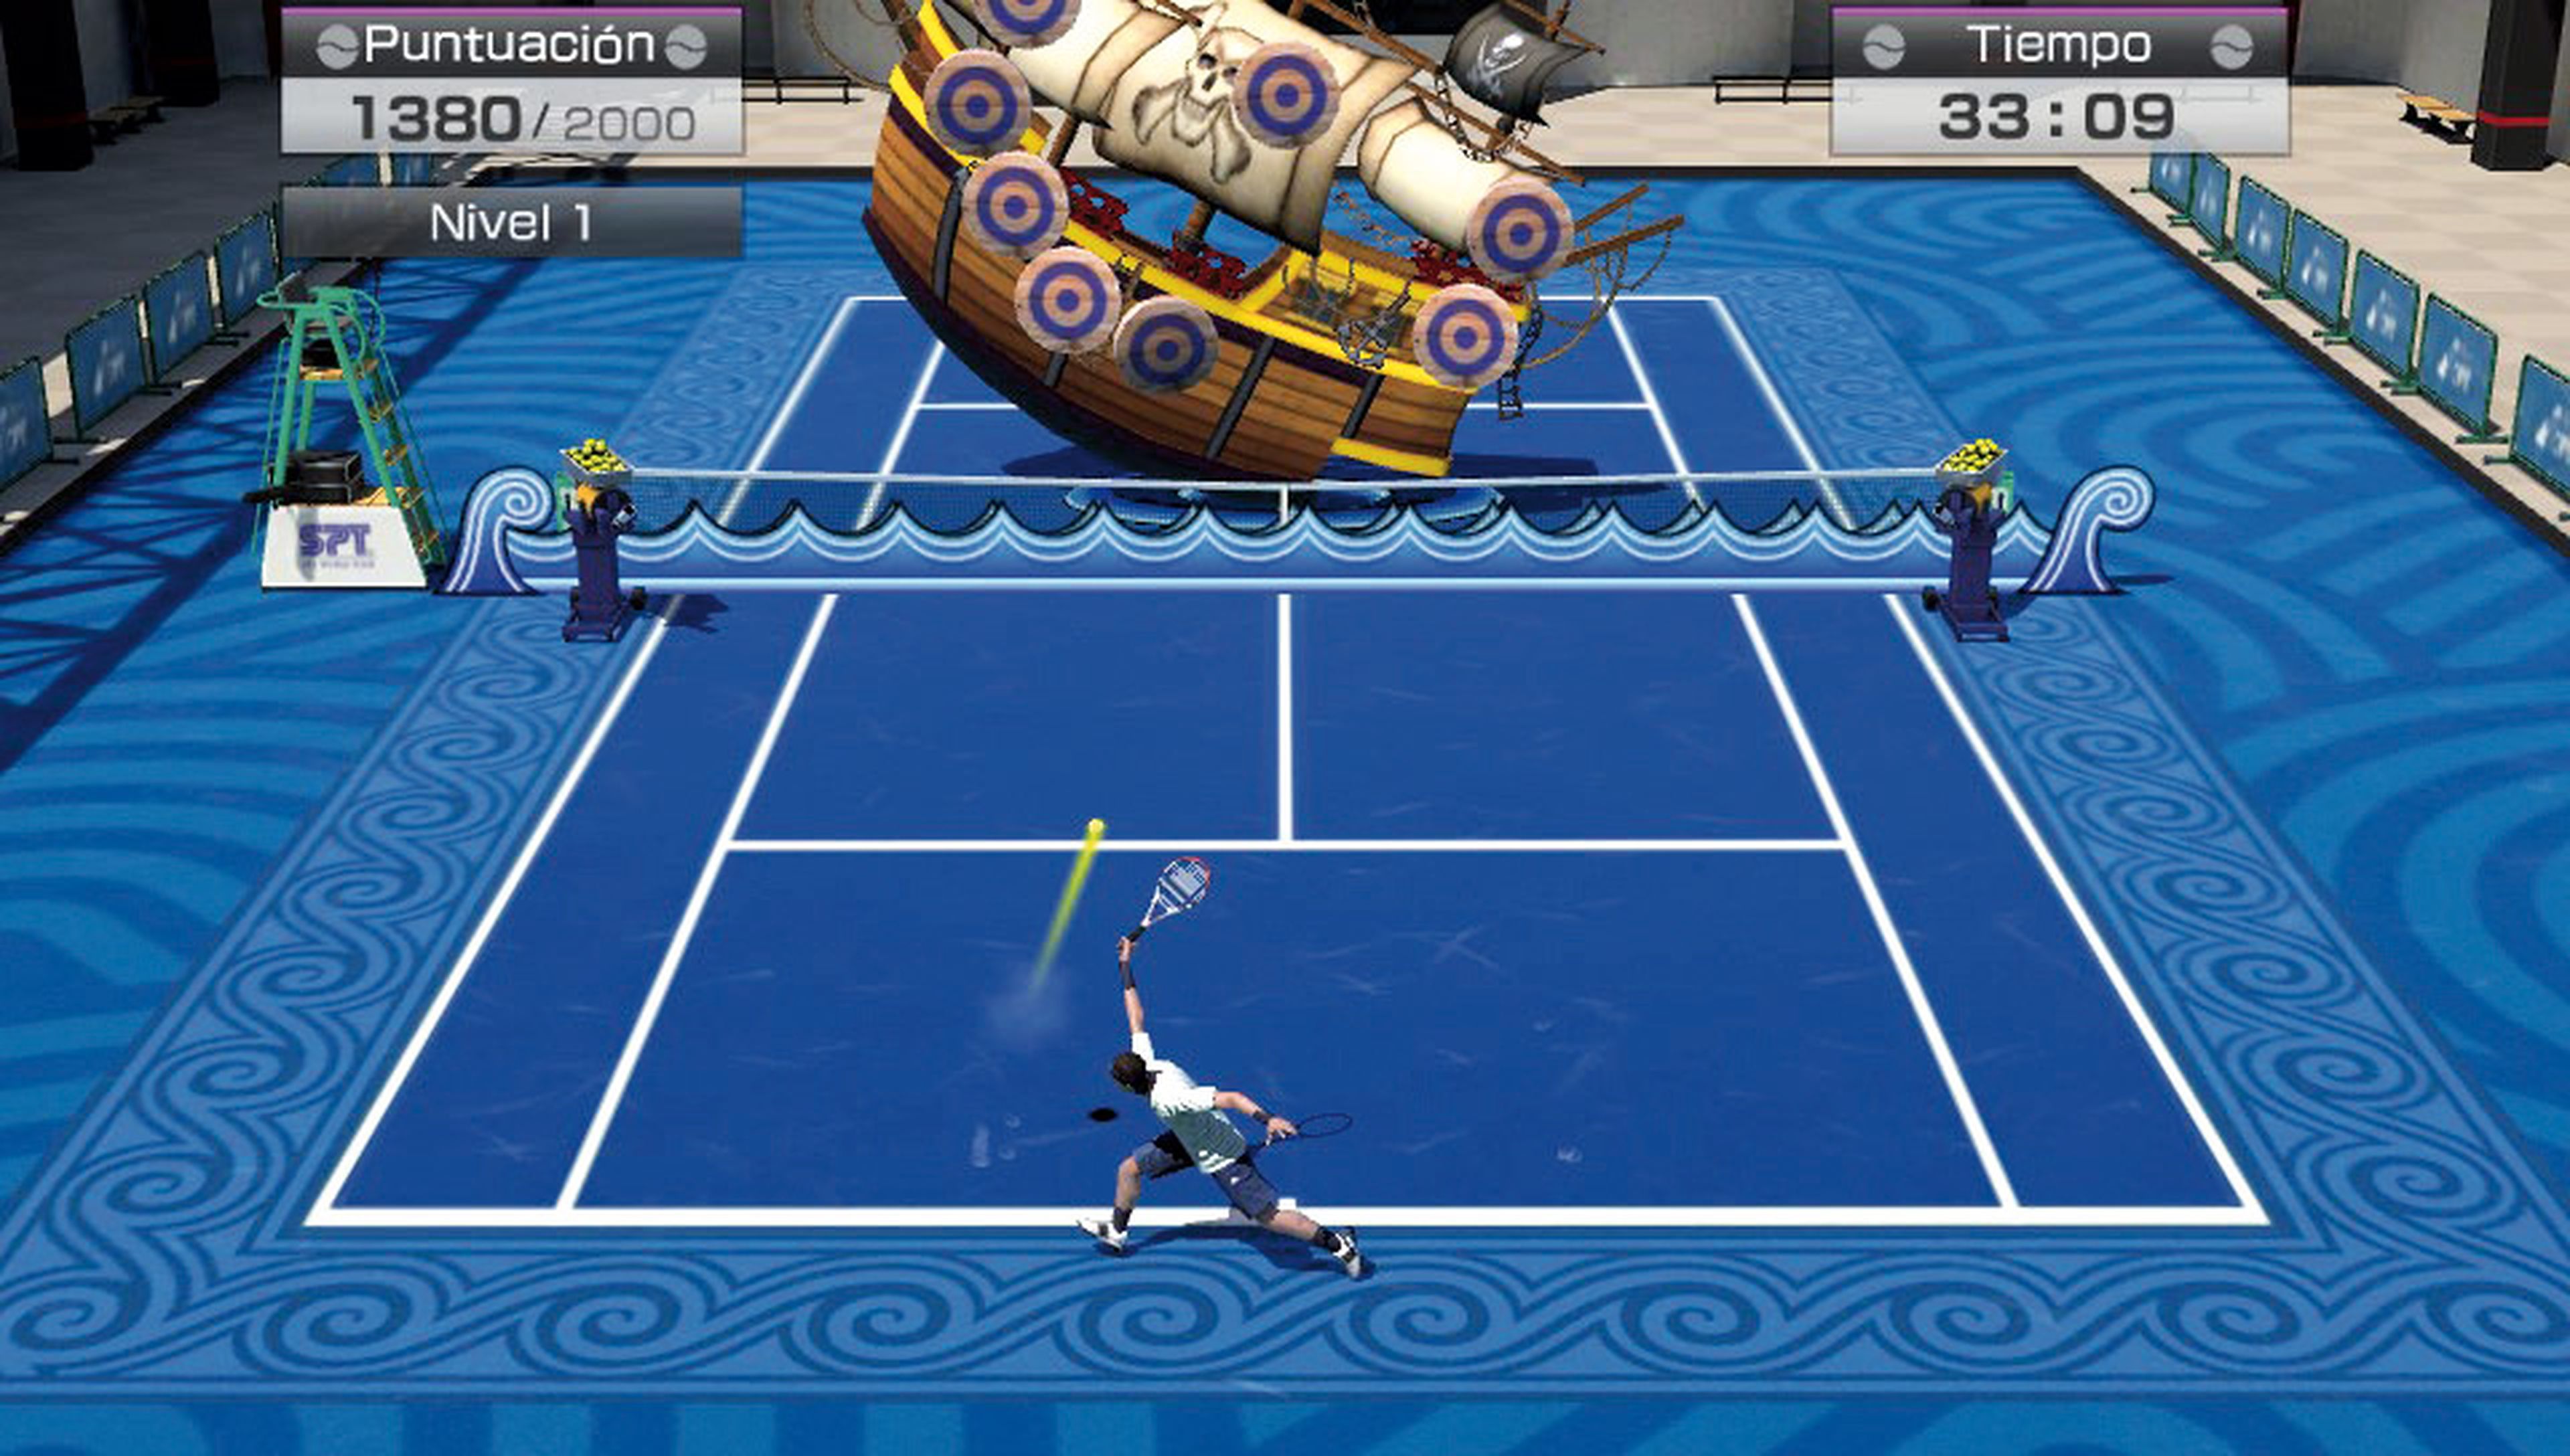 Análisis de Virtua Tennis 4 Edición World Tour